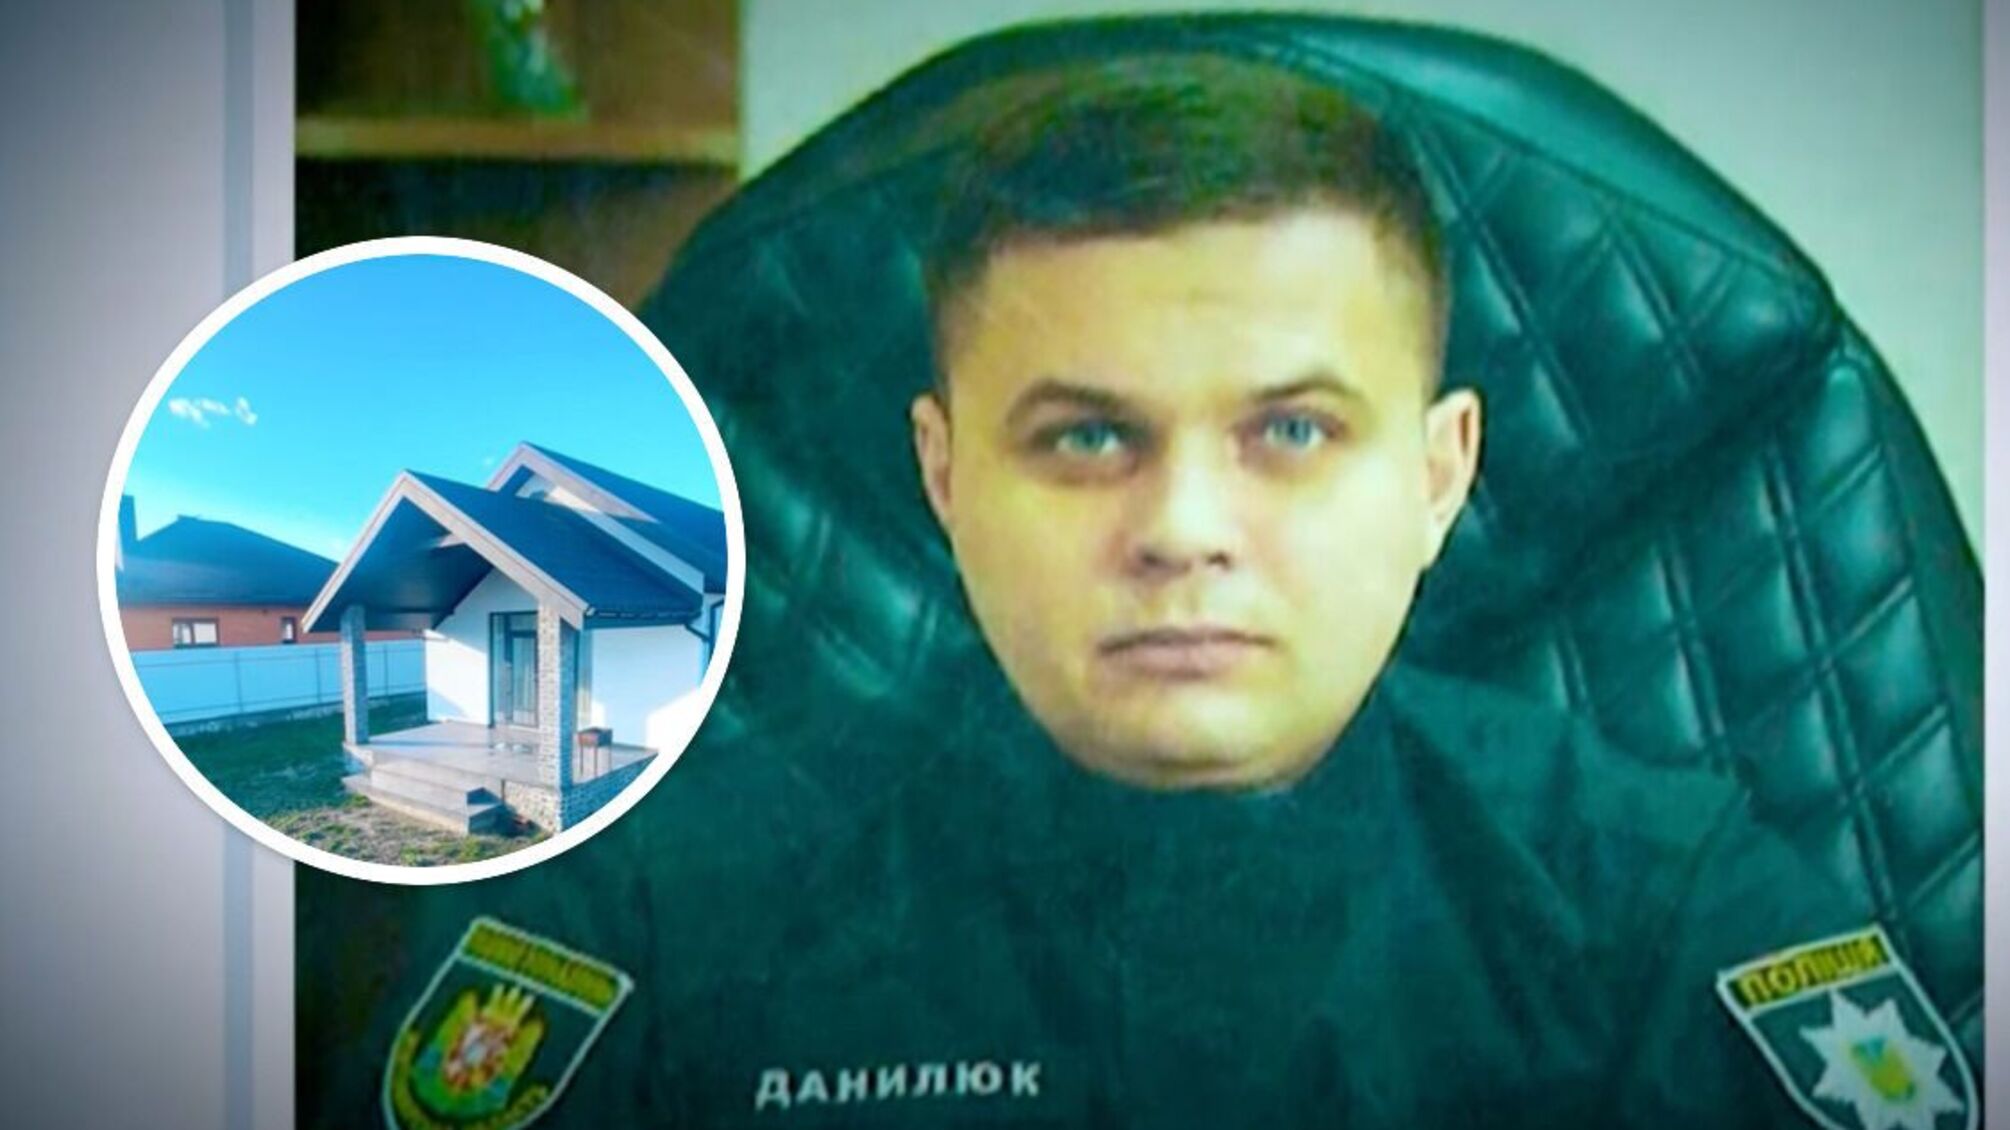 Родички начальника малинської поліції Данилюка стали власницями елітної нерухомості